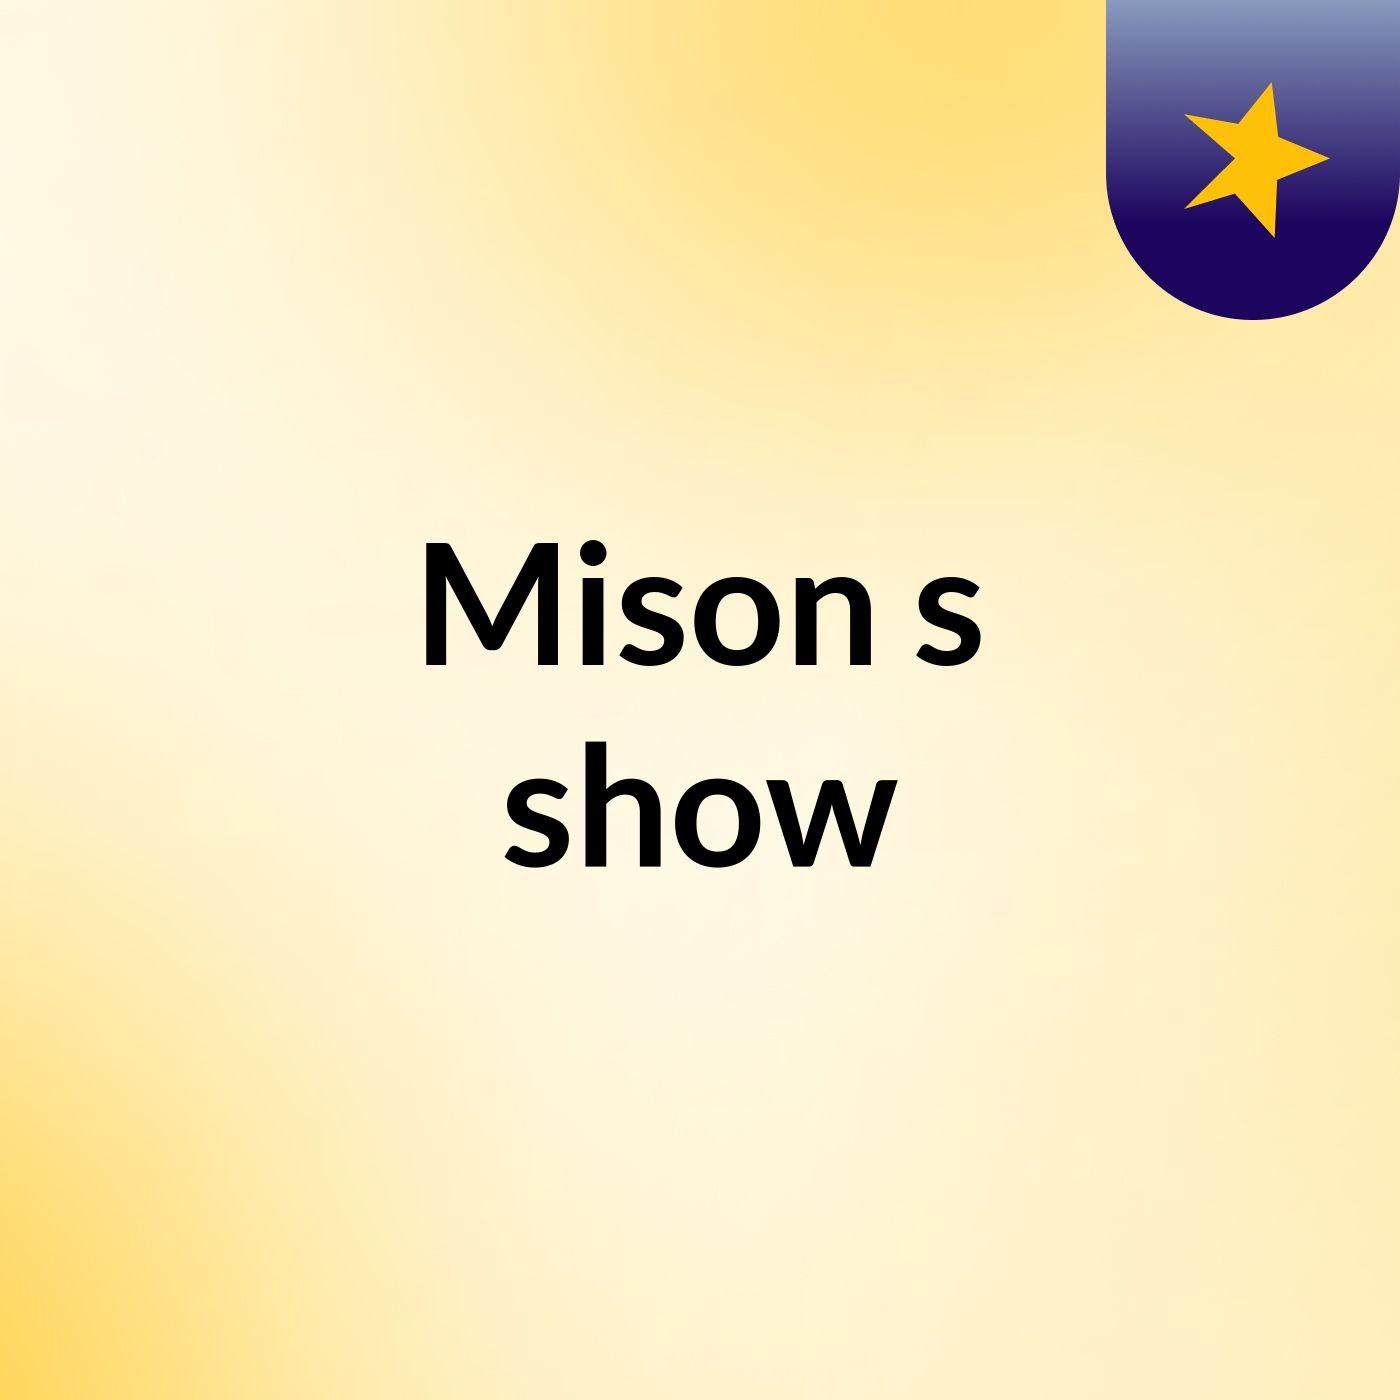 Mison's show